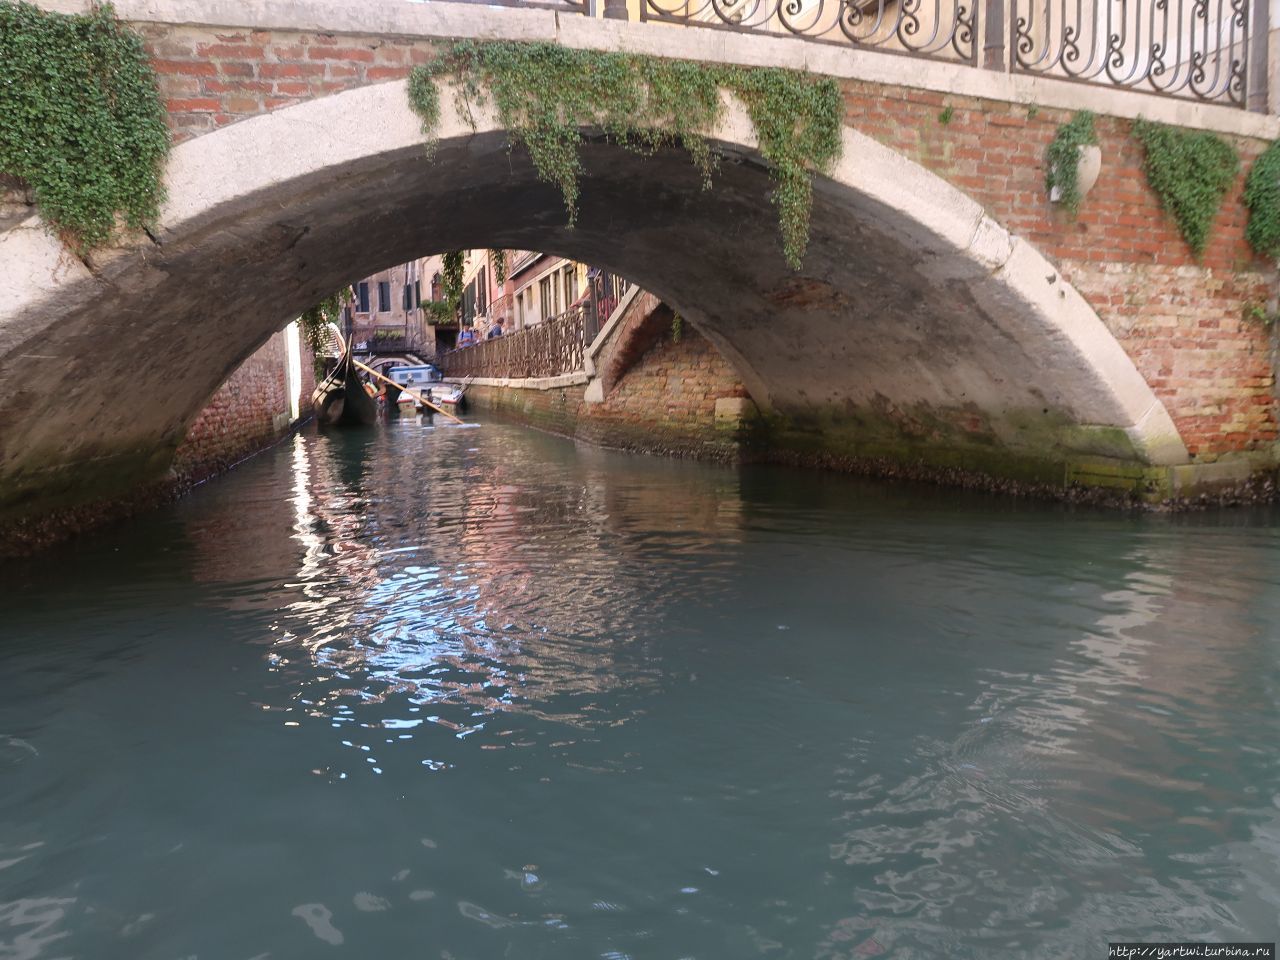 По каналам на гондоле. Вид с канала на мостики. Венеция, Италия